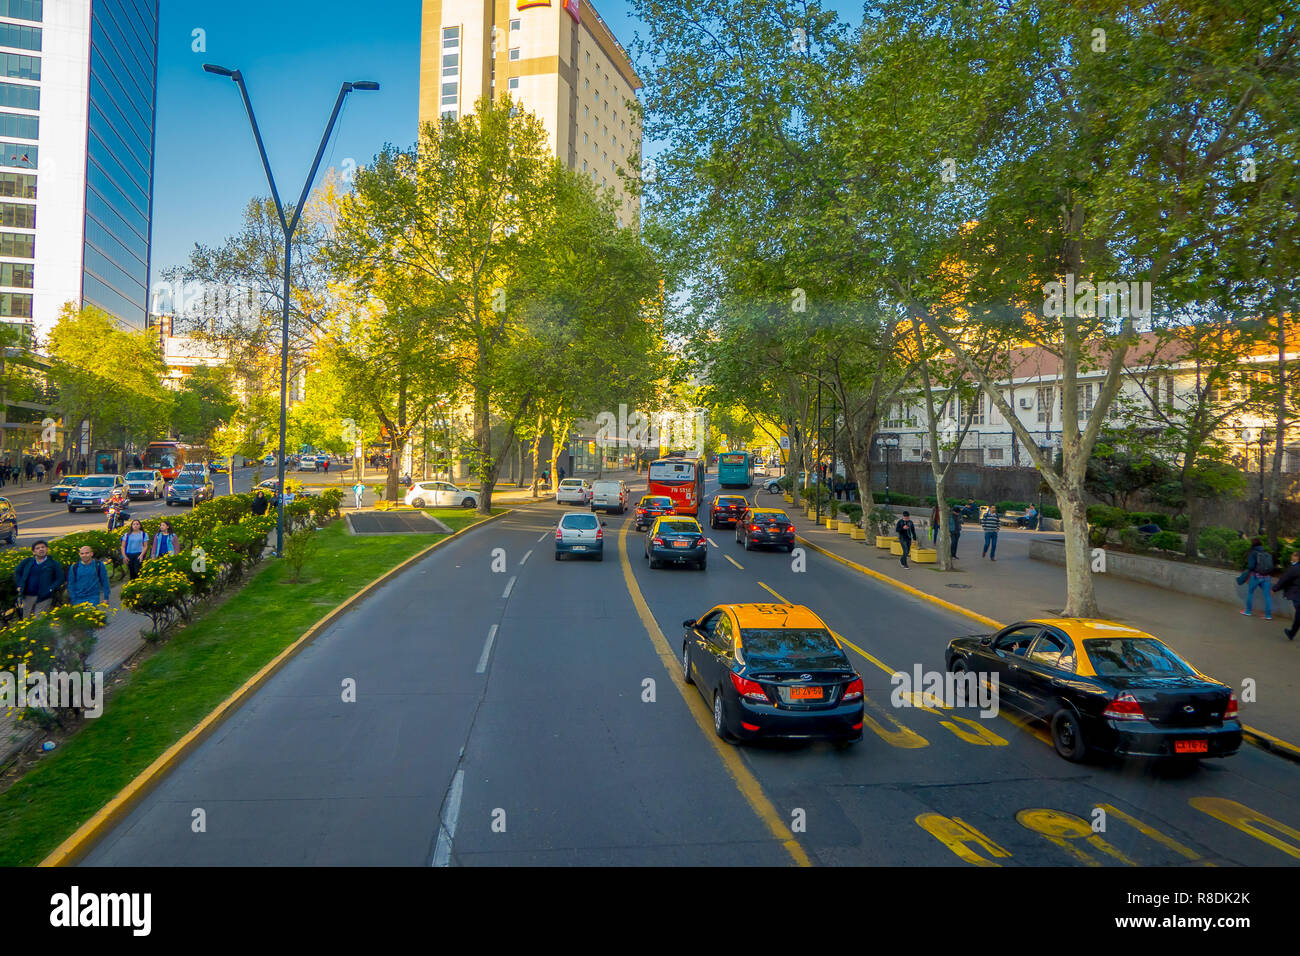 SANTIAGO DE CHILE, CHILE - OCTOBER 16, 2018: Traffic on Avenida Libertador Bernardo O'Higgins avenue in Santiago, Chile Stock Photo